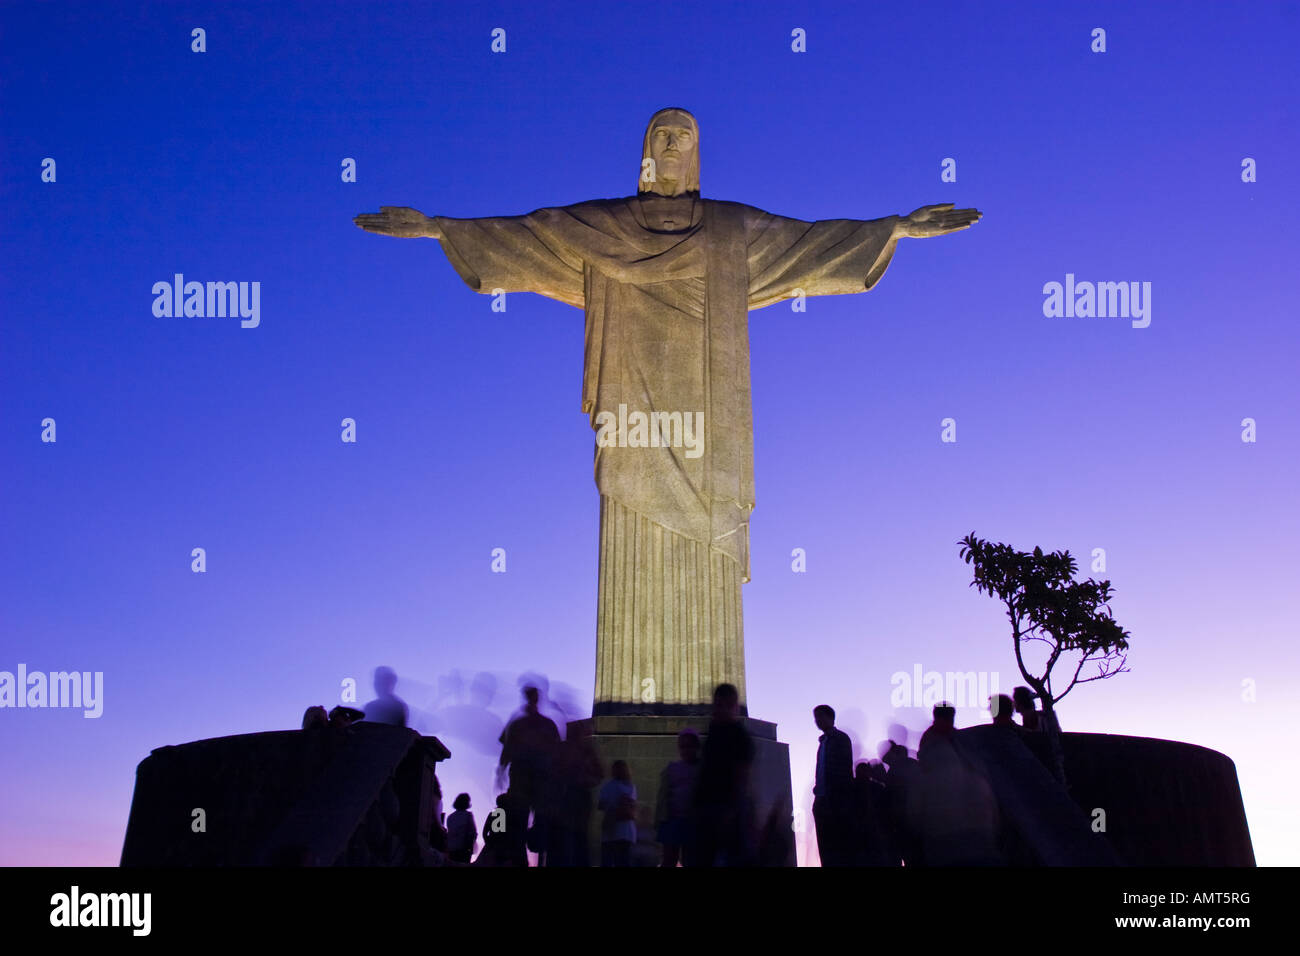 Die Christusstatue befindet sich eine Statue von Jesus Christus in Rio De Janeiro Brasilien und befindet sich am Corcovado Berg Stockfoto